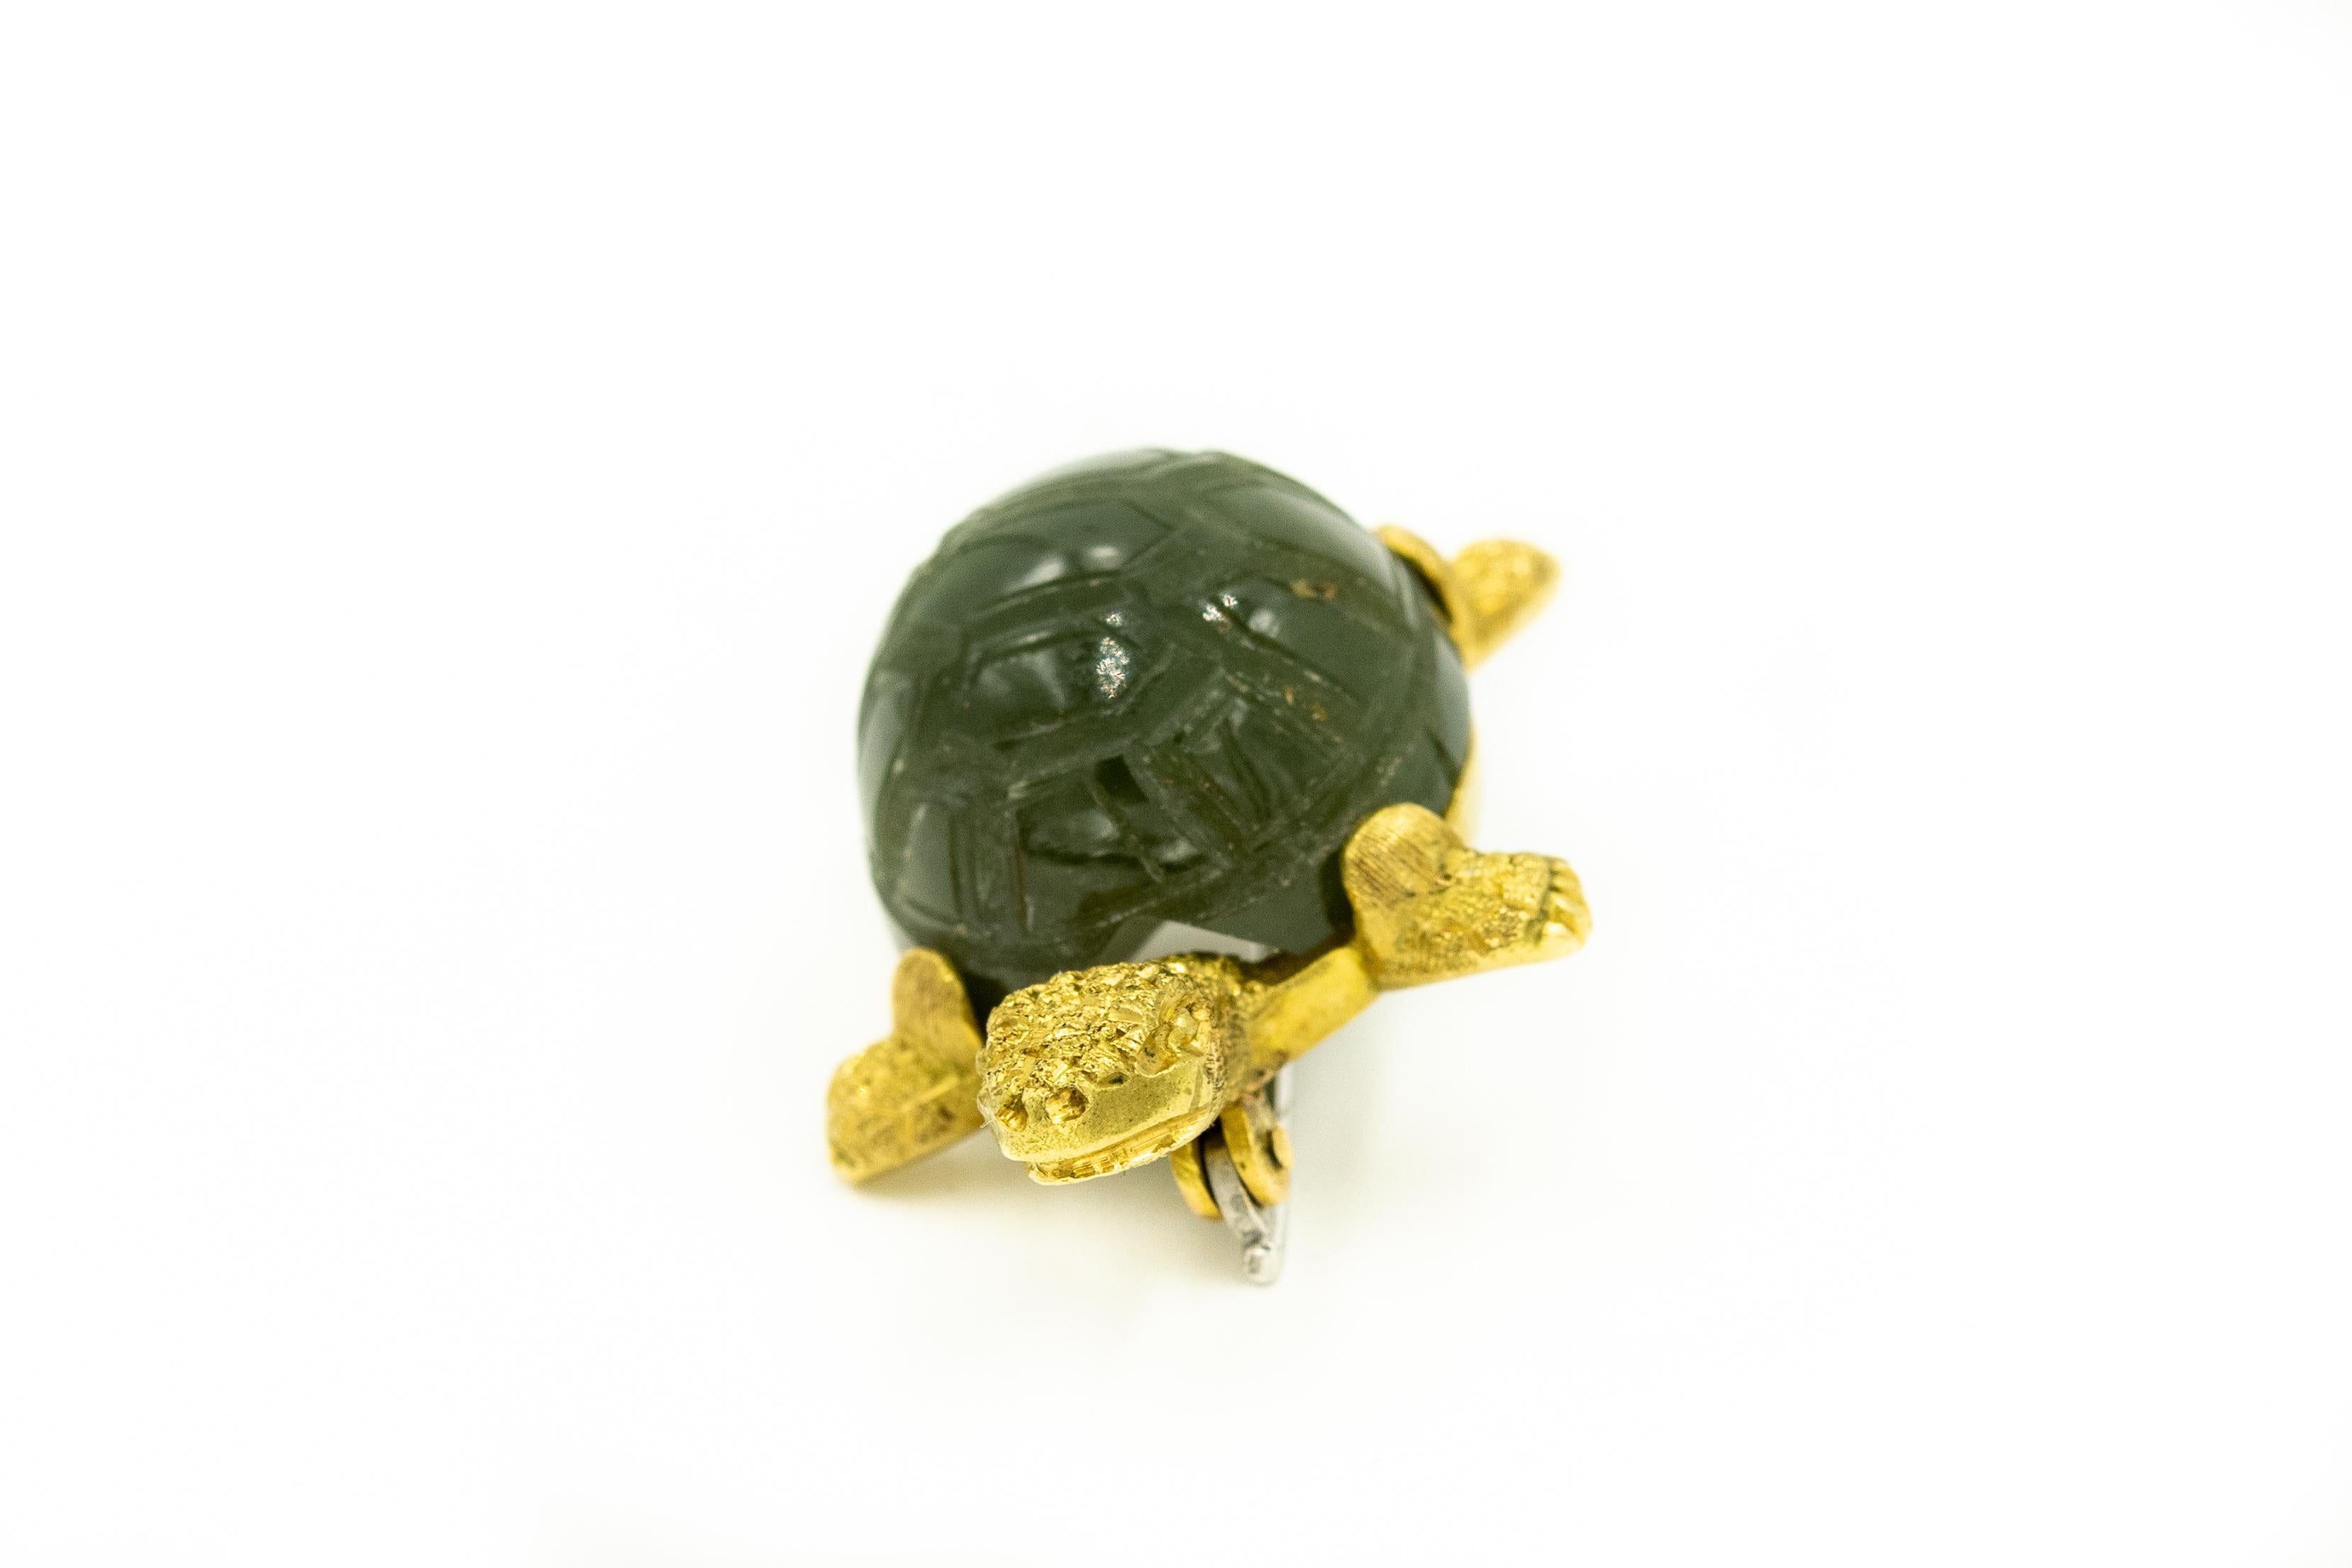 Adorable broche tortue présentant une carapace de jade néphrite sculptée et une tête, des pattes et une queue en or jaune 18k texturé.  

Il est marqué 750 pour 18k  vraisemblablement italien.